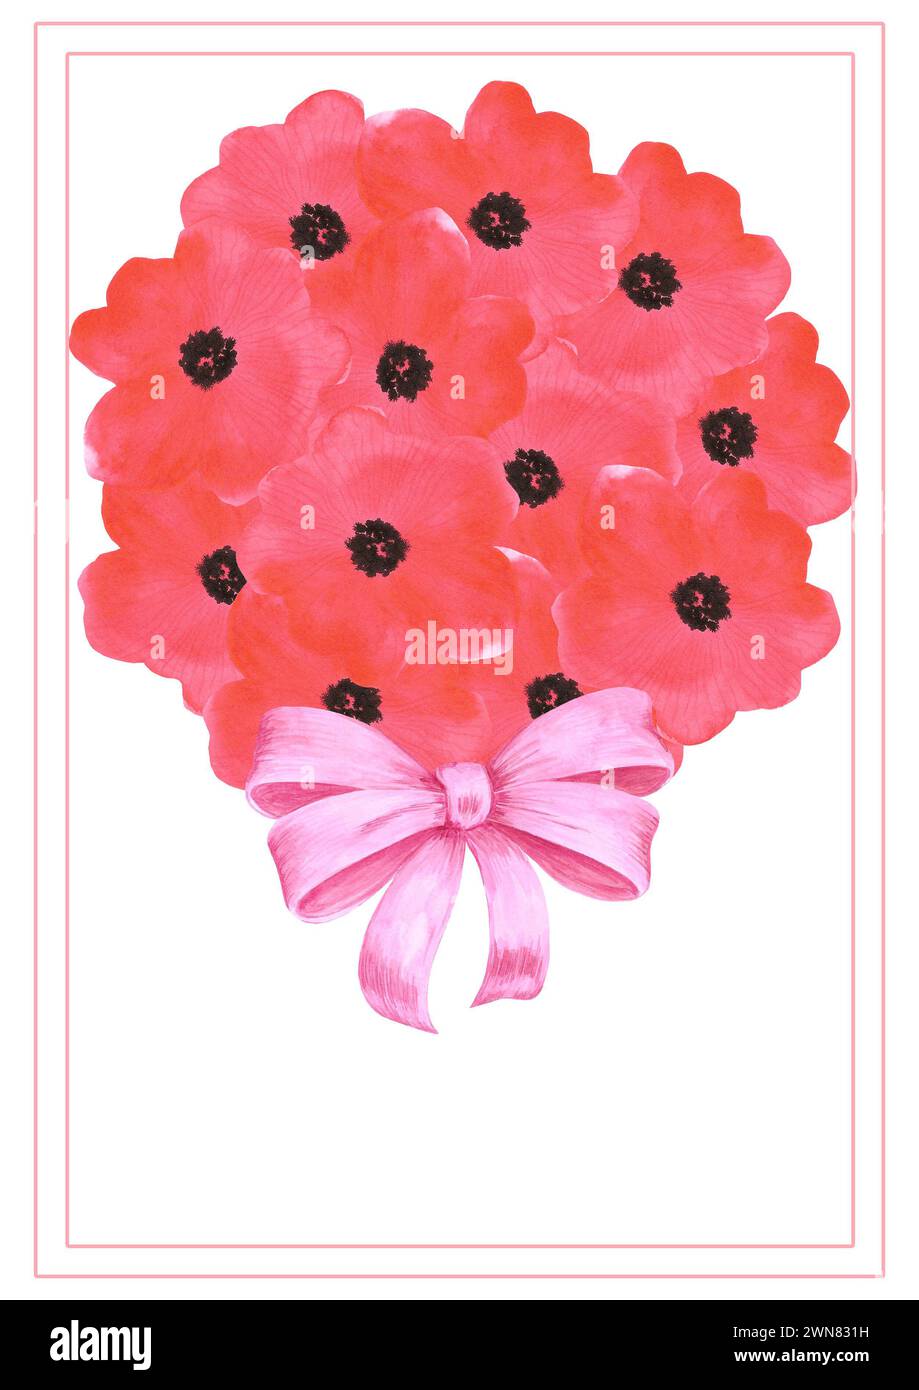 Carte postale de bouquet de fleurs de coquelicot rouge dessinée à l'aquarelle dessinée à la main isolé sur fond blanc. Peut être utilisé pour la carte, l'affiche et d'autres produits imprimés Banque D'Images